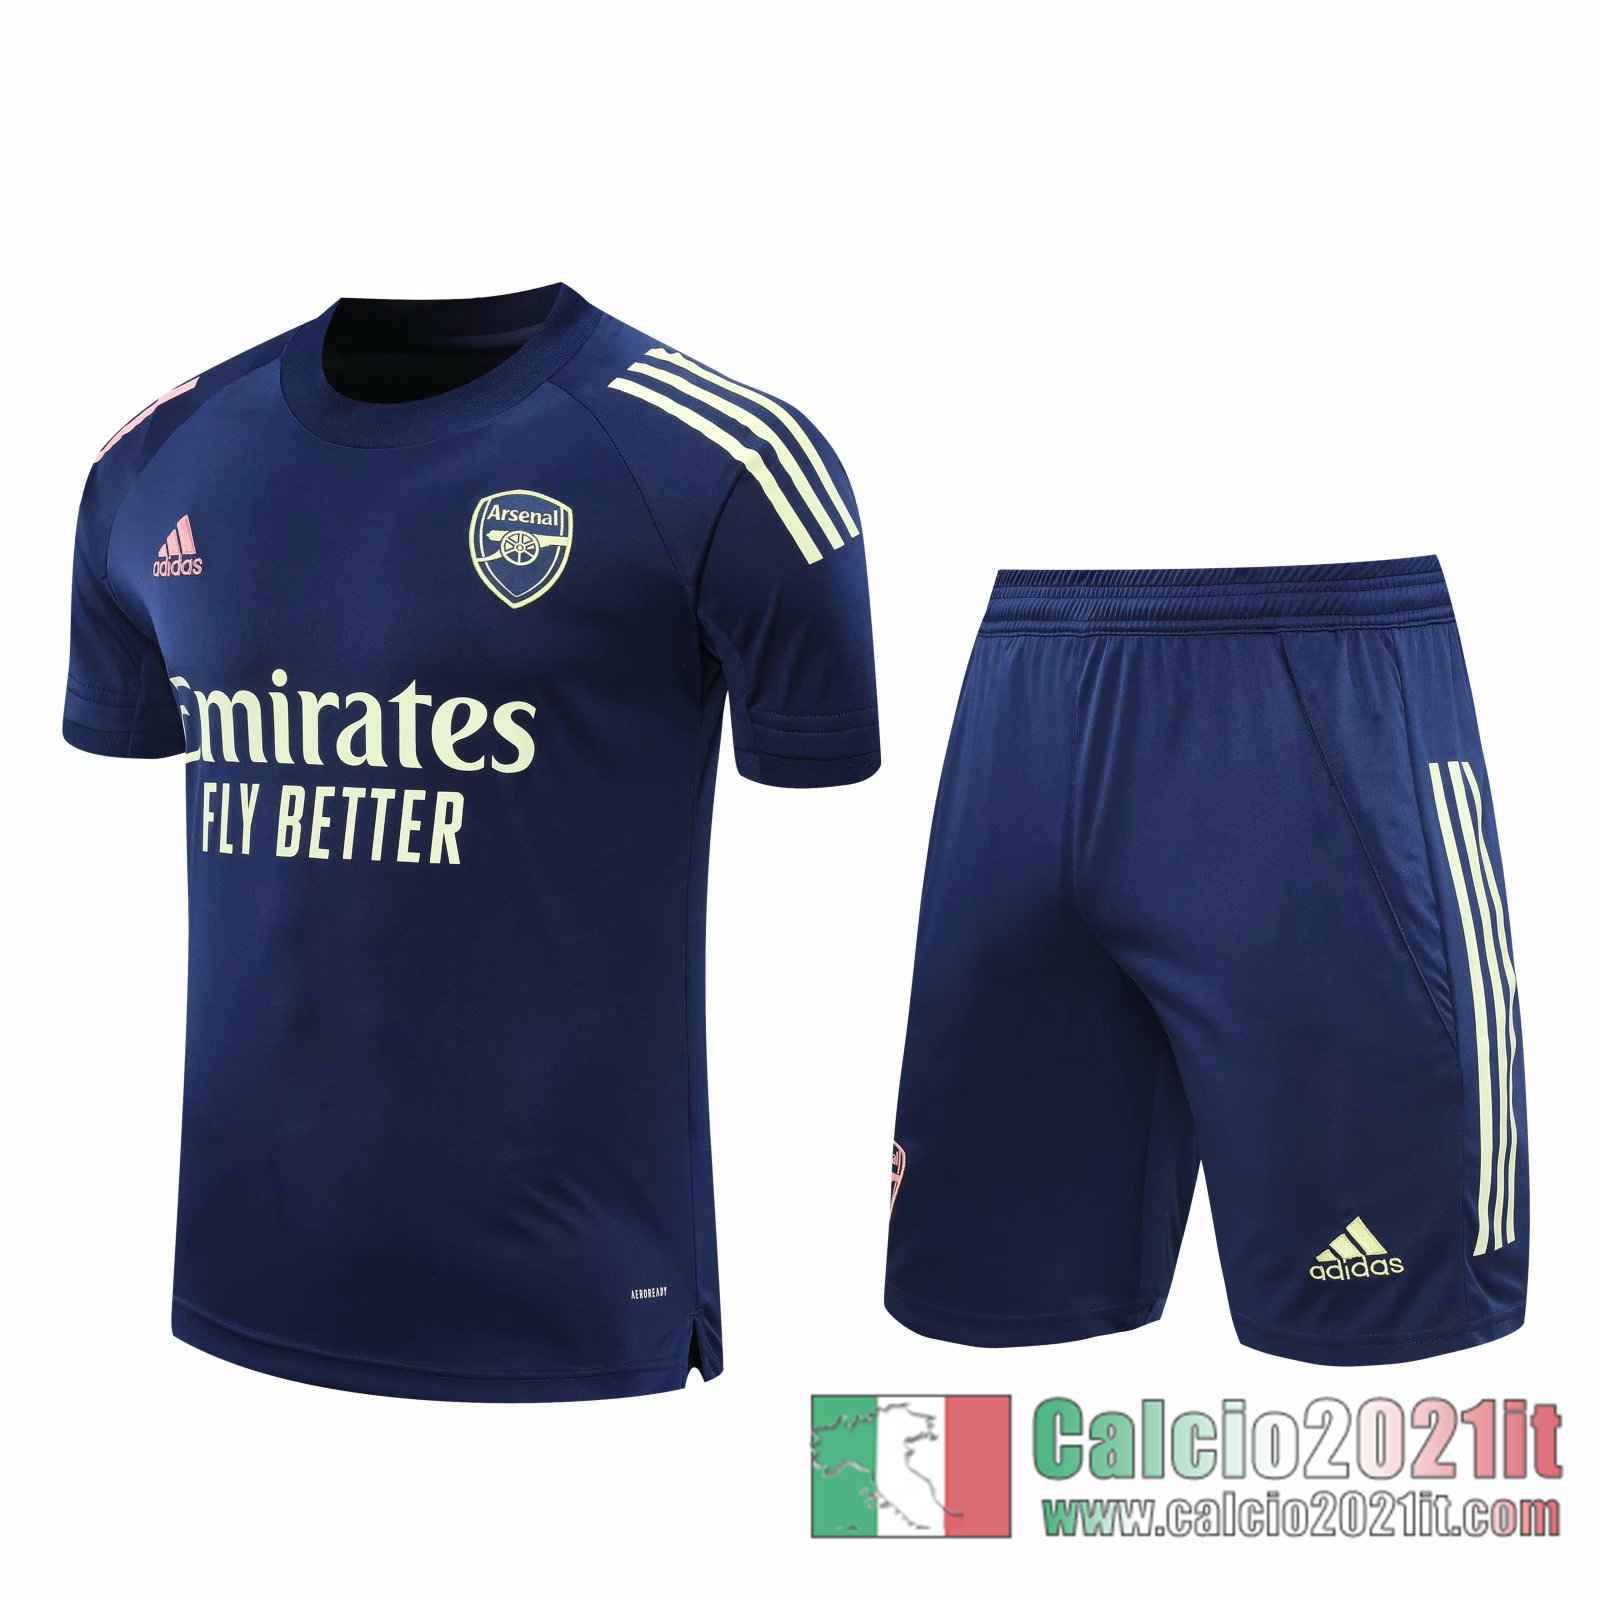 Arsenal Magliette Tuta Calcio Blu scuro 2020 2021 T123